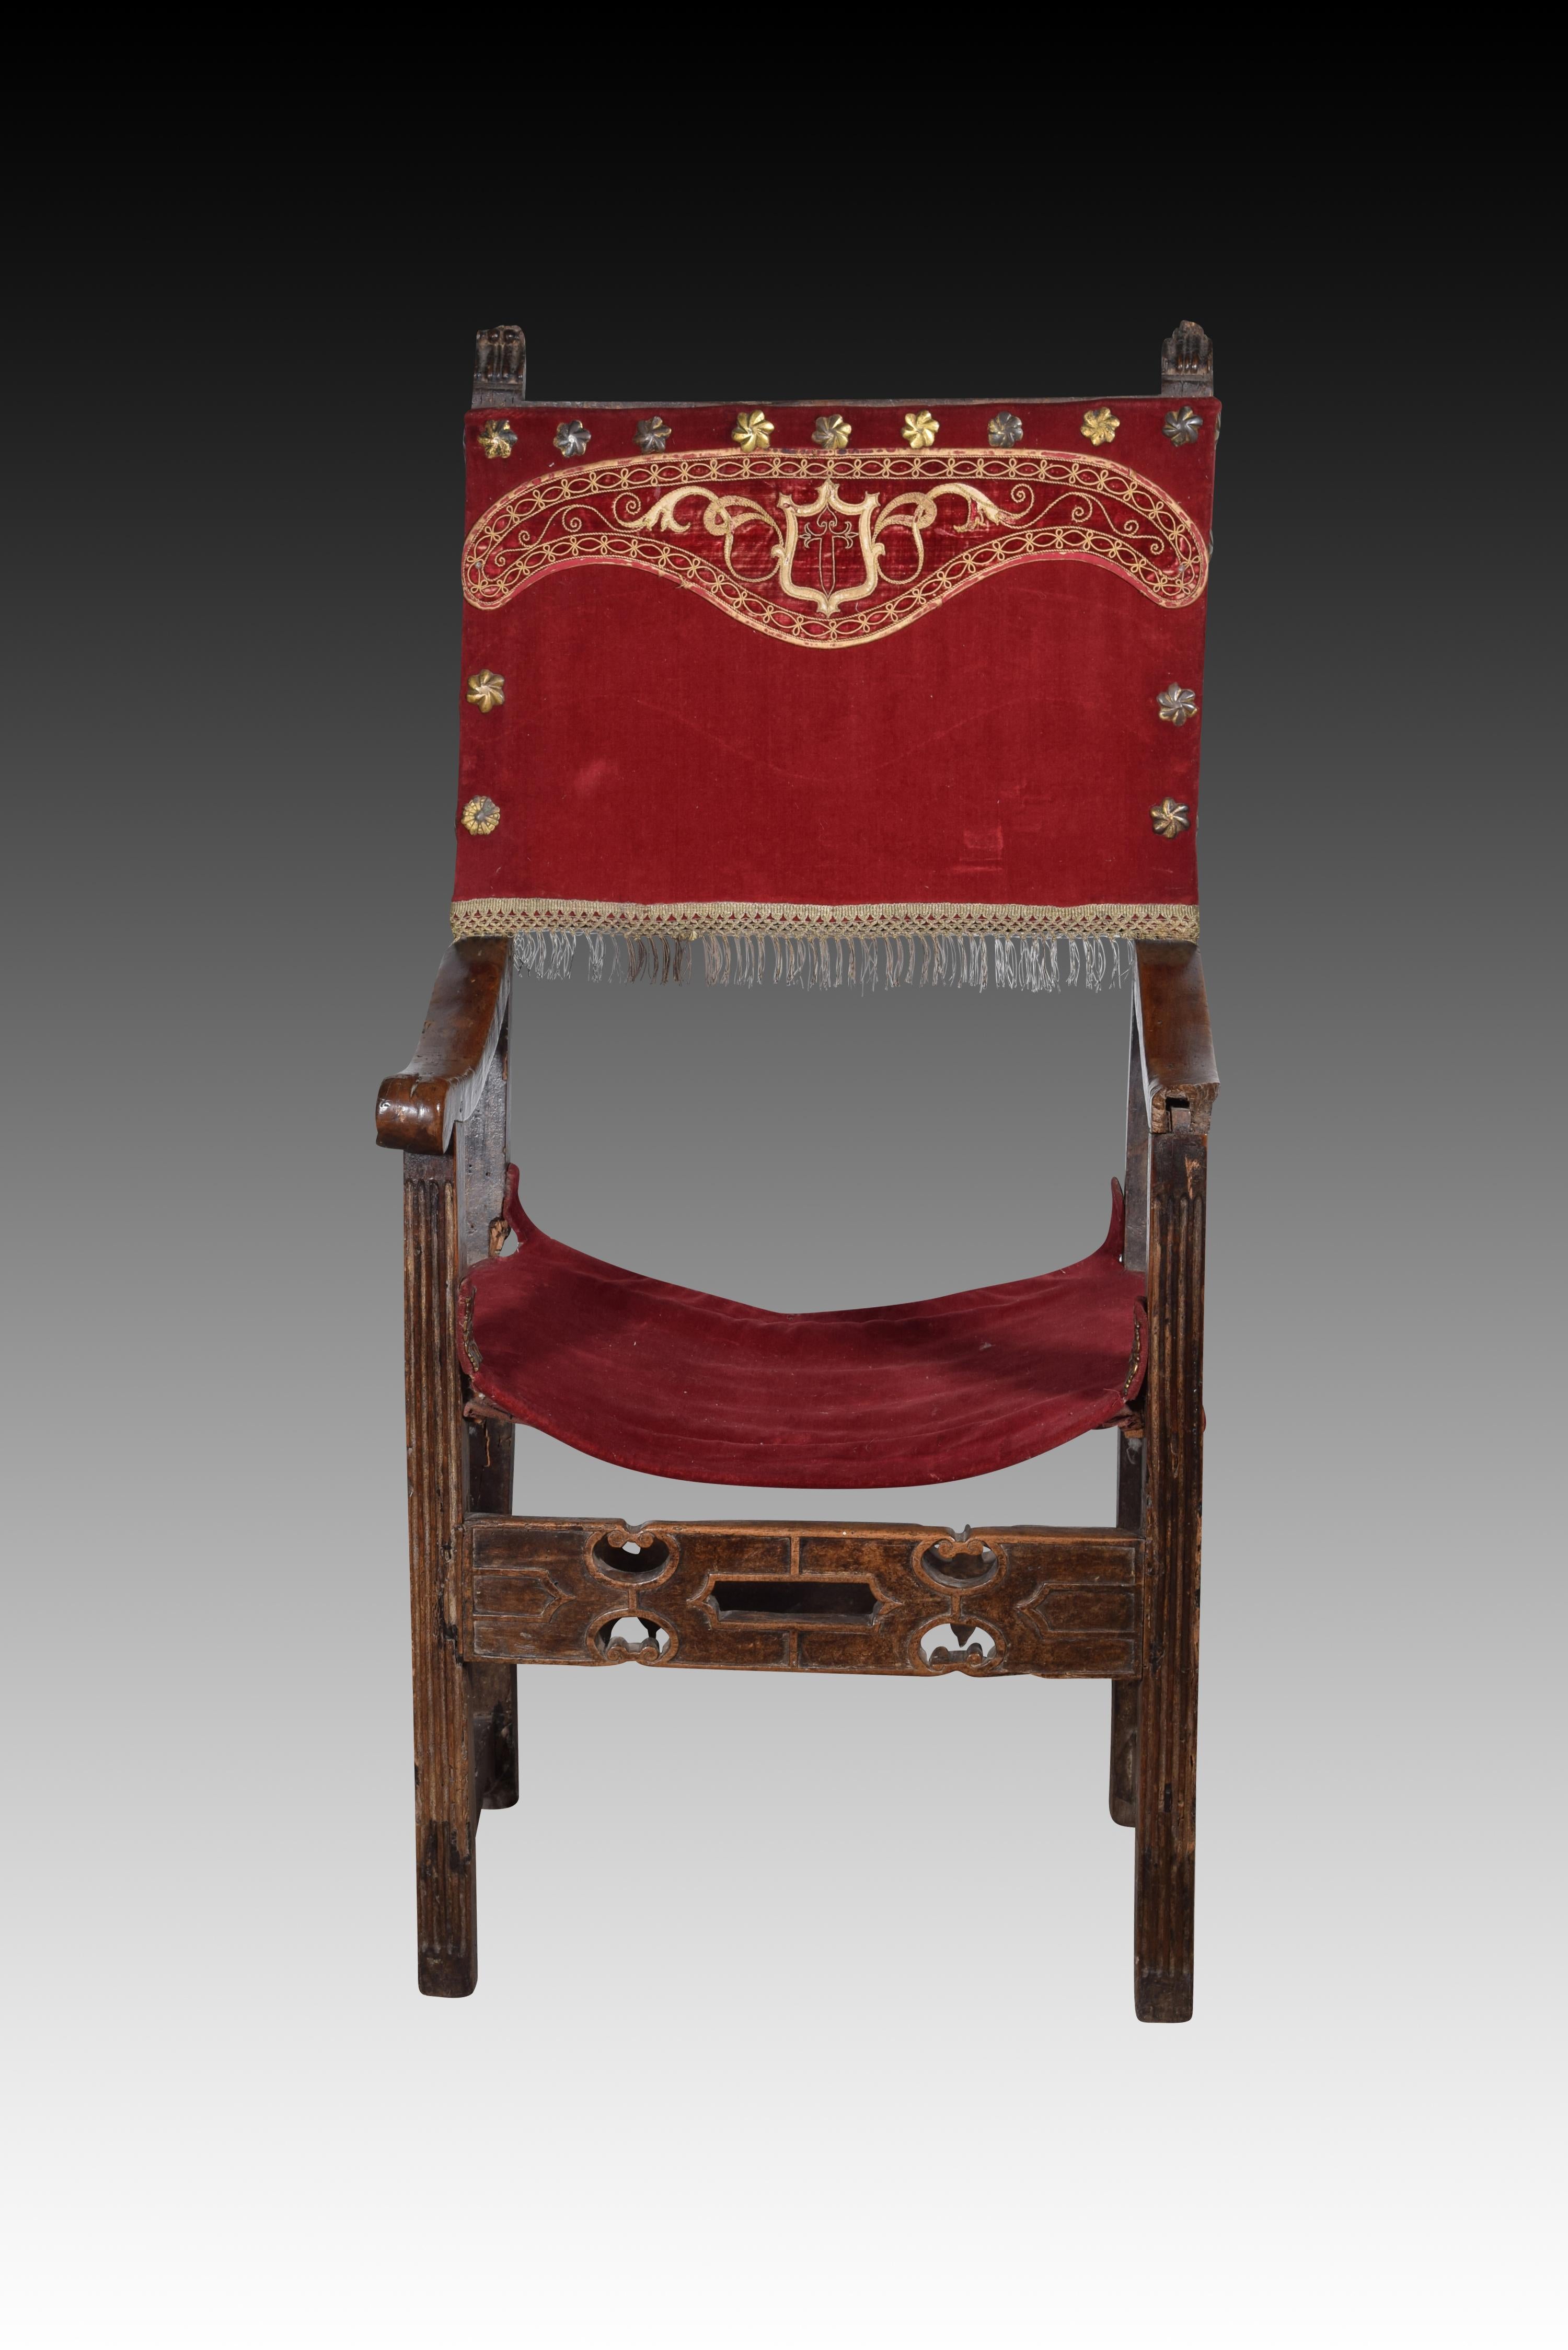 Bruder Sessel. Walnussholz, Textil, Metall. Spanien, 16. Jahrhundert. 
Hat Mängel. 
Sessel mit Armlehnen und hoher Rückenlehne des Typs 